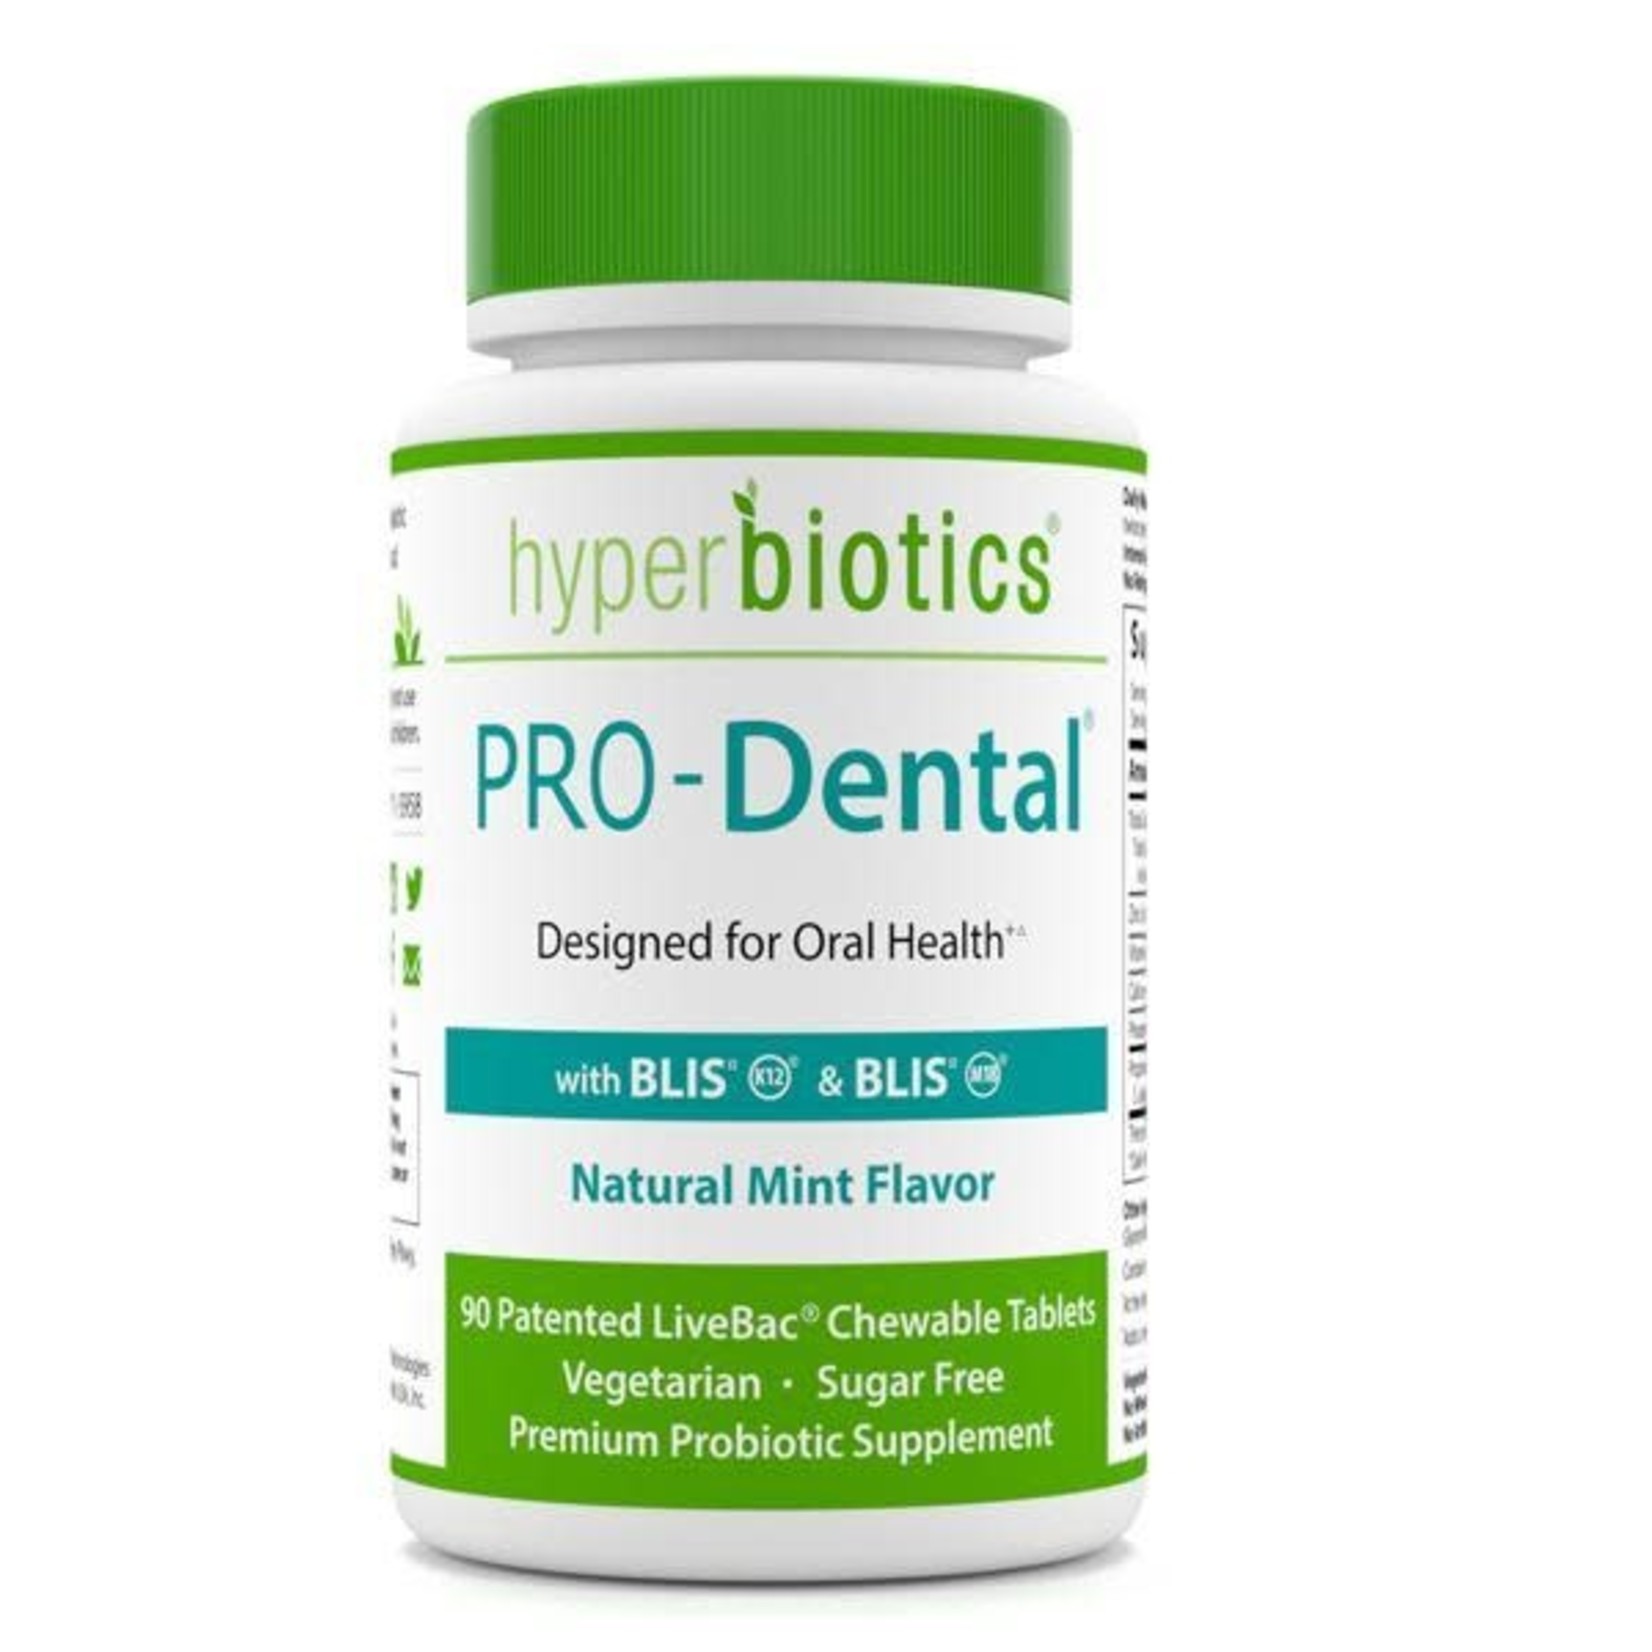 Hyperbiotics Pro-Dental (Hyperbiotics)